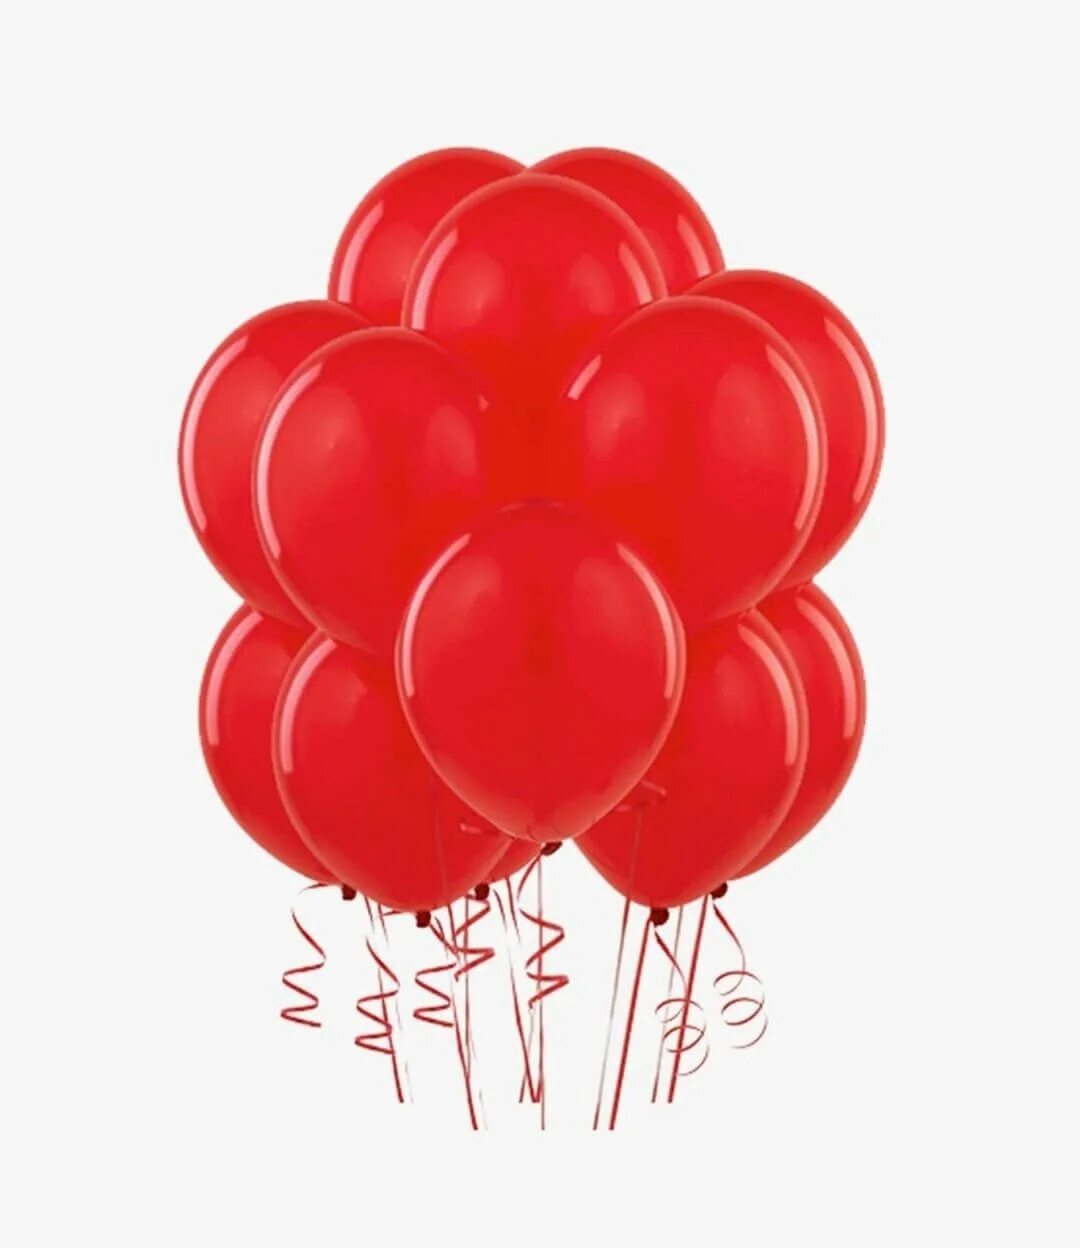 Видео красных шаров. Красные шары. Воздушные шары. Красный воздушный шар. Красные воздушные шары много.